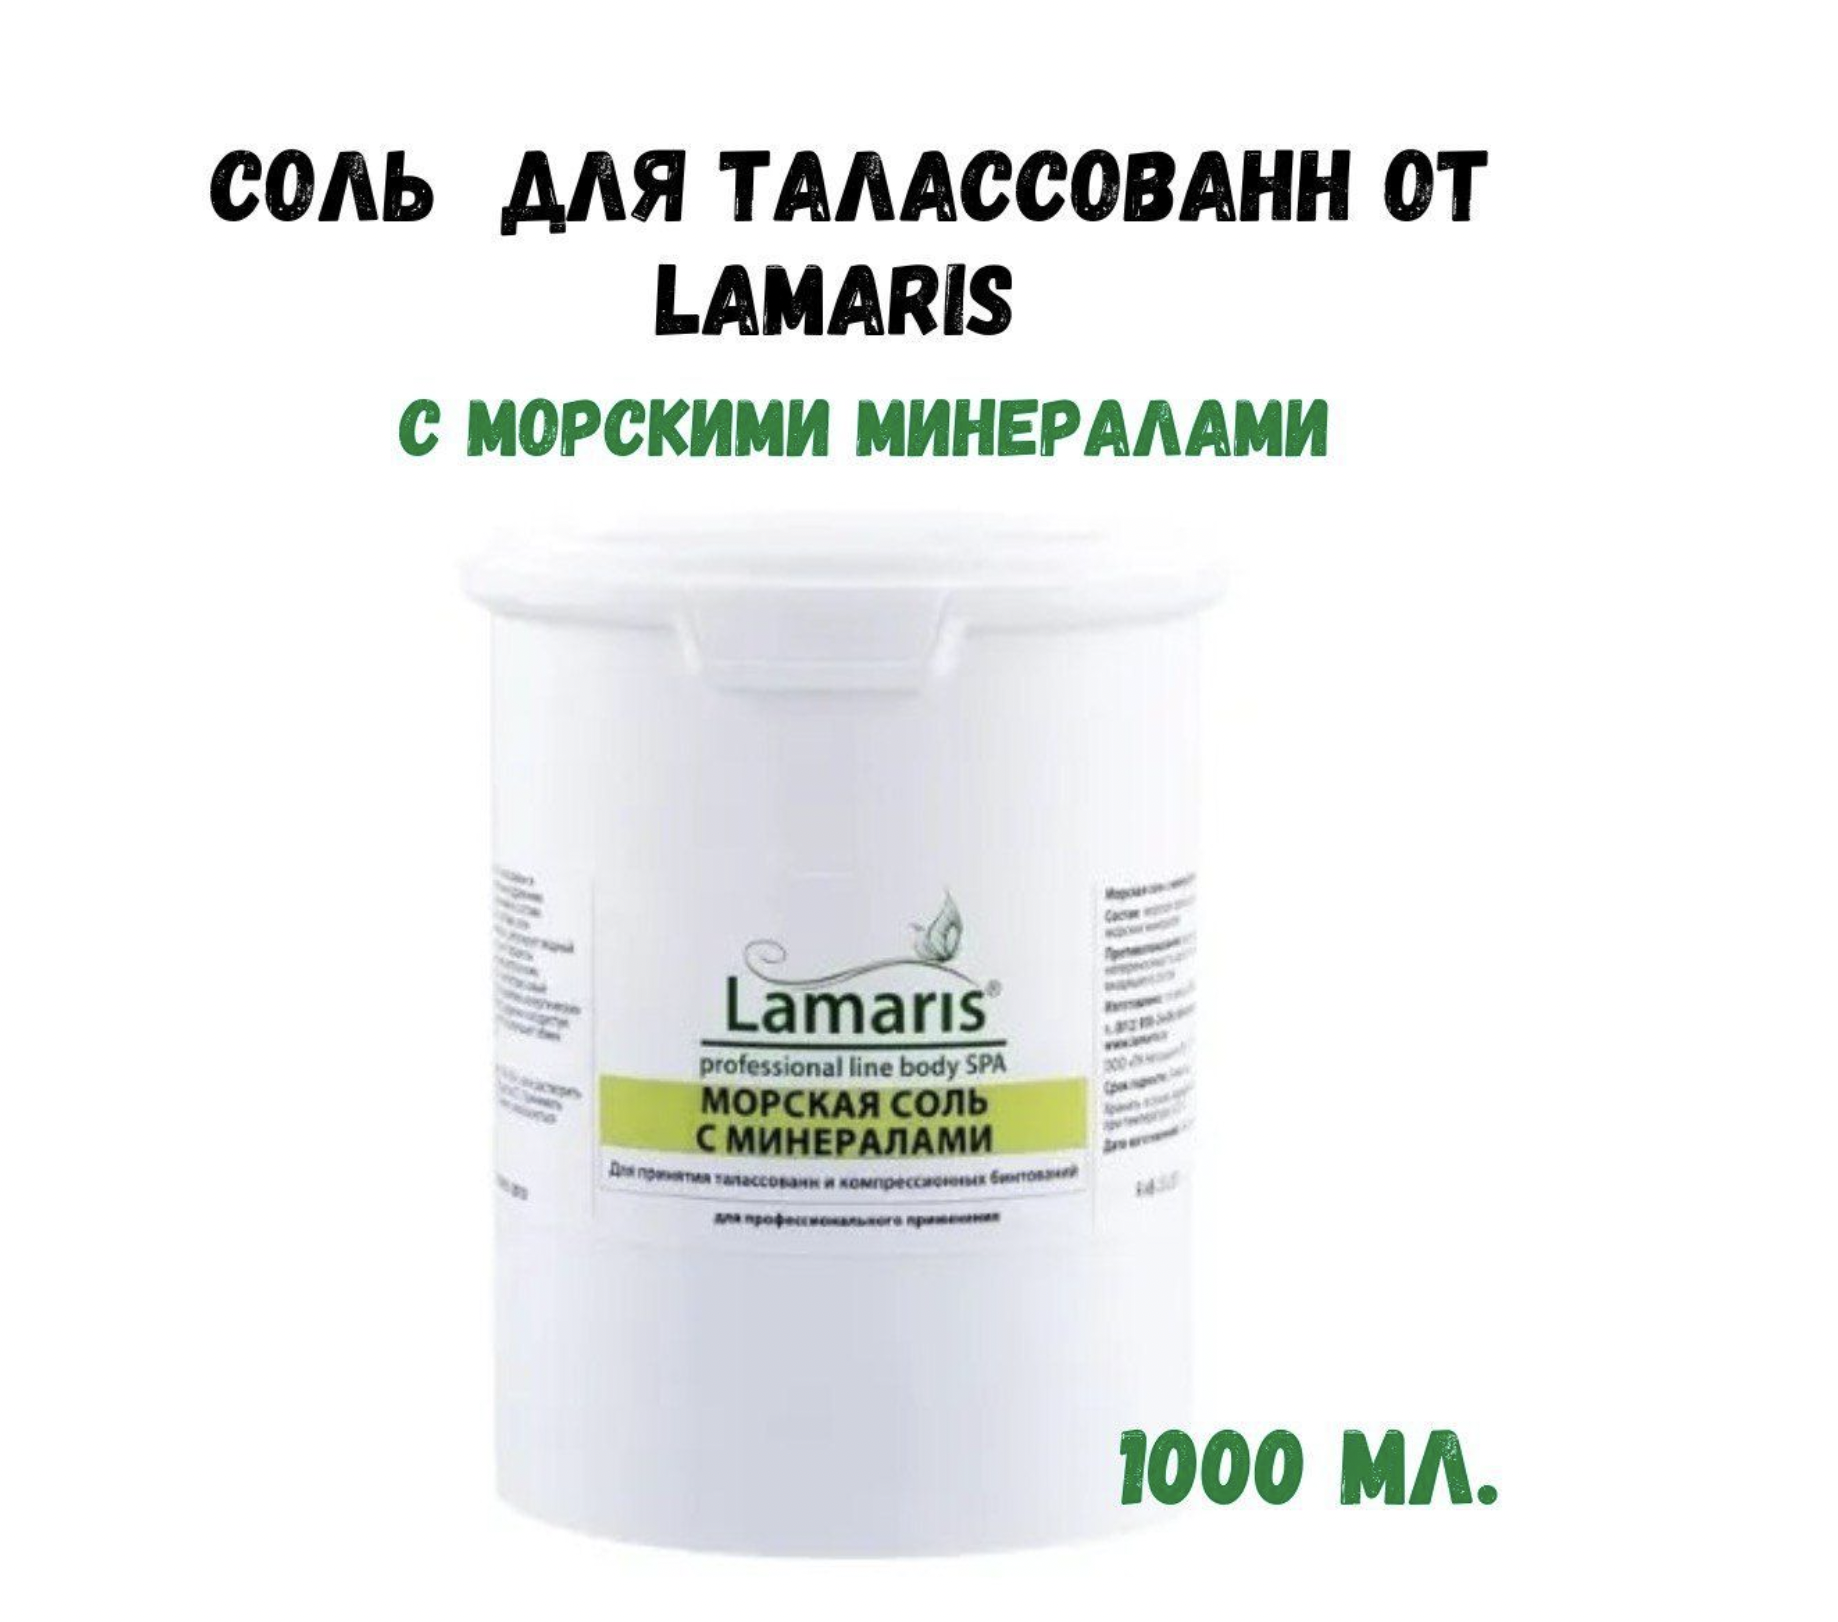 Соль Lamaris для талассованн с морскими минералами 1 кг